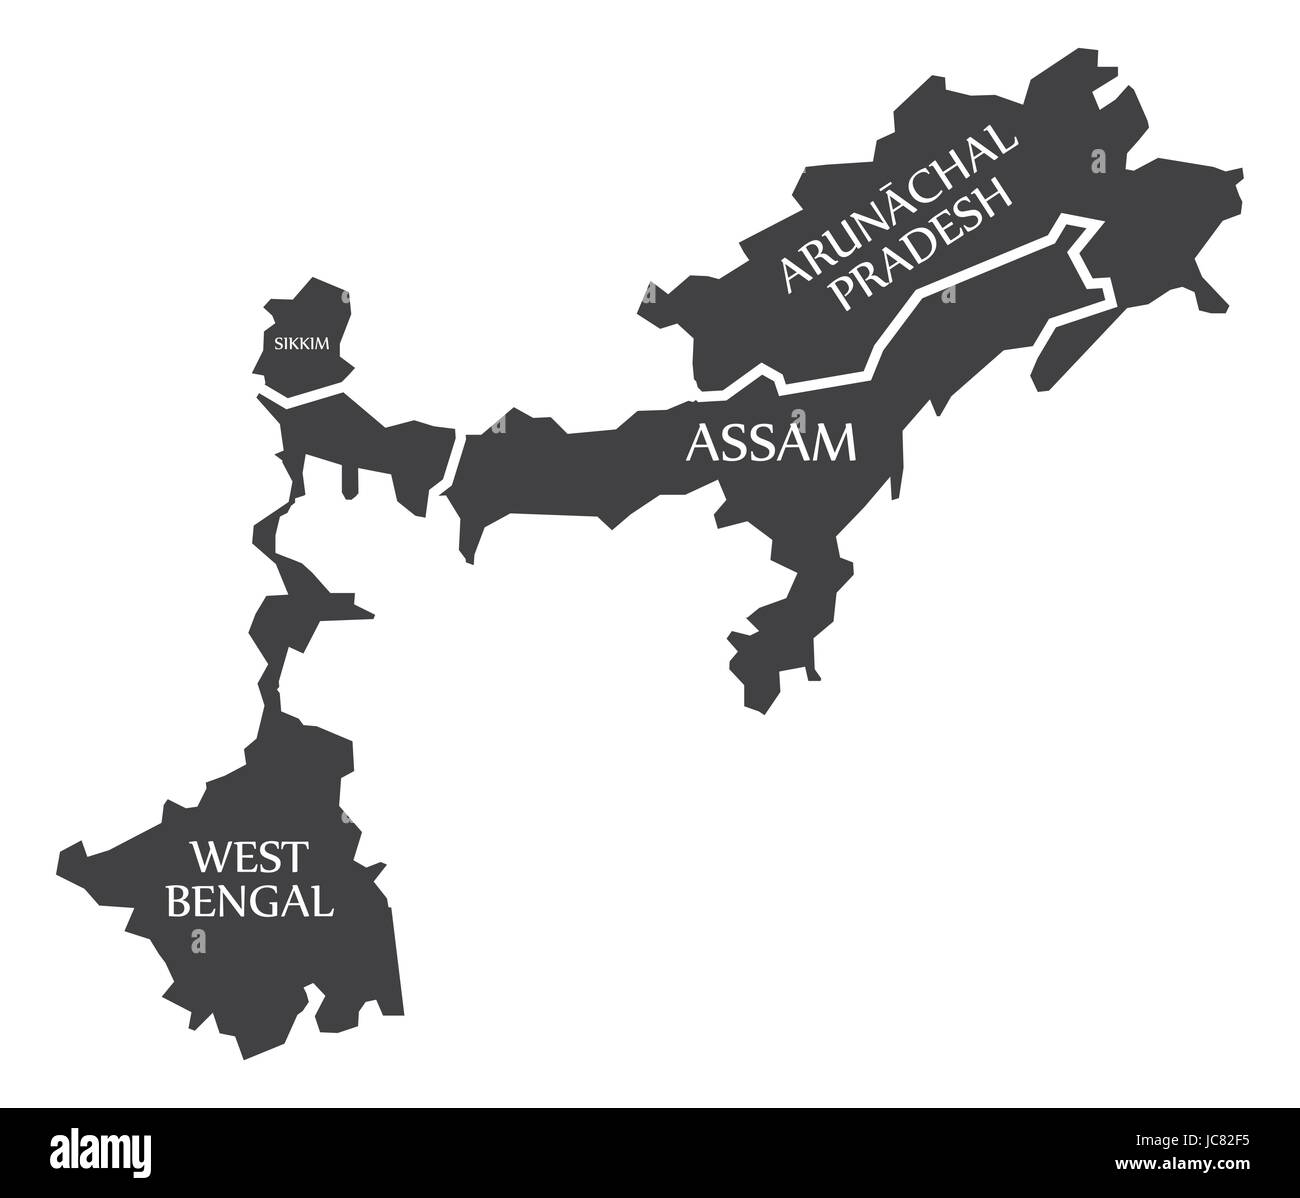 Il Bengala Occidentale - Sikkim - Assam - Arunachal Pradesh Mappa illustrazione di Stati indiani Illustrazione Vettoriale